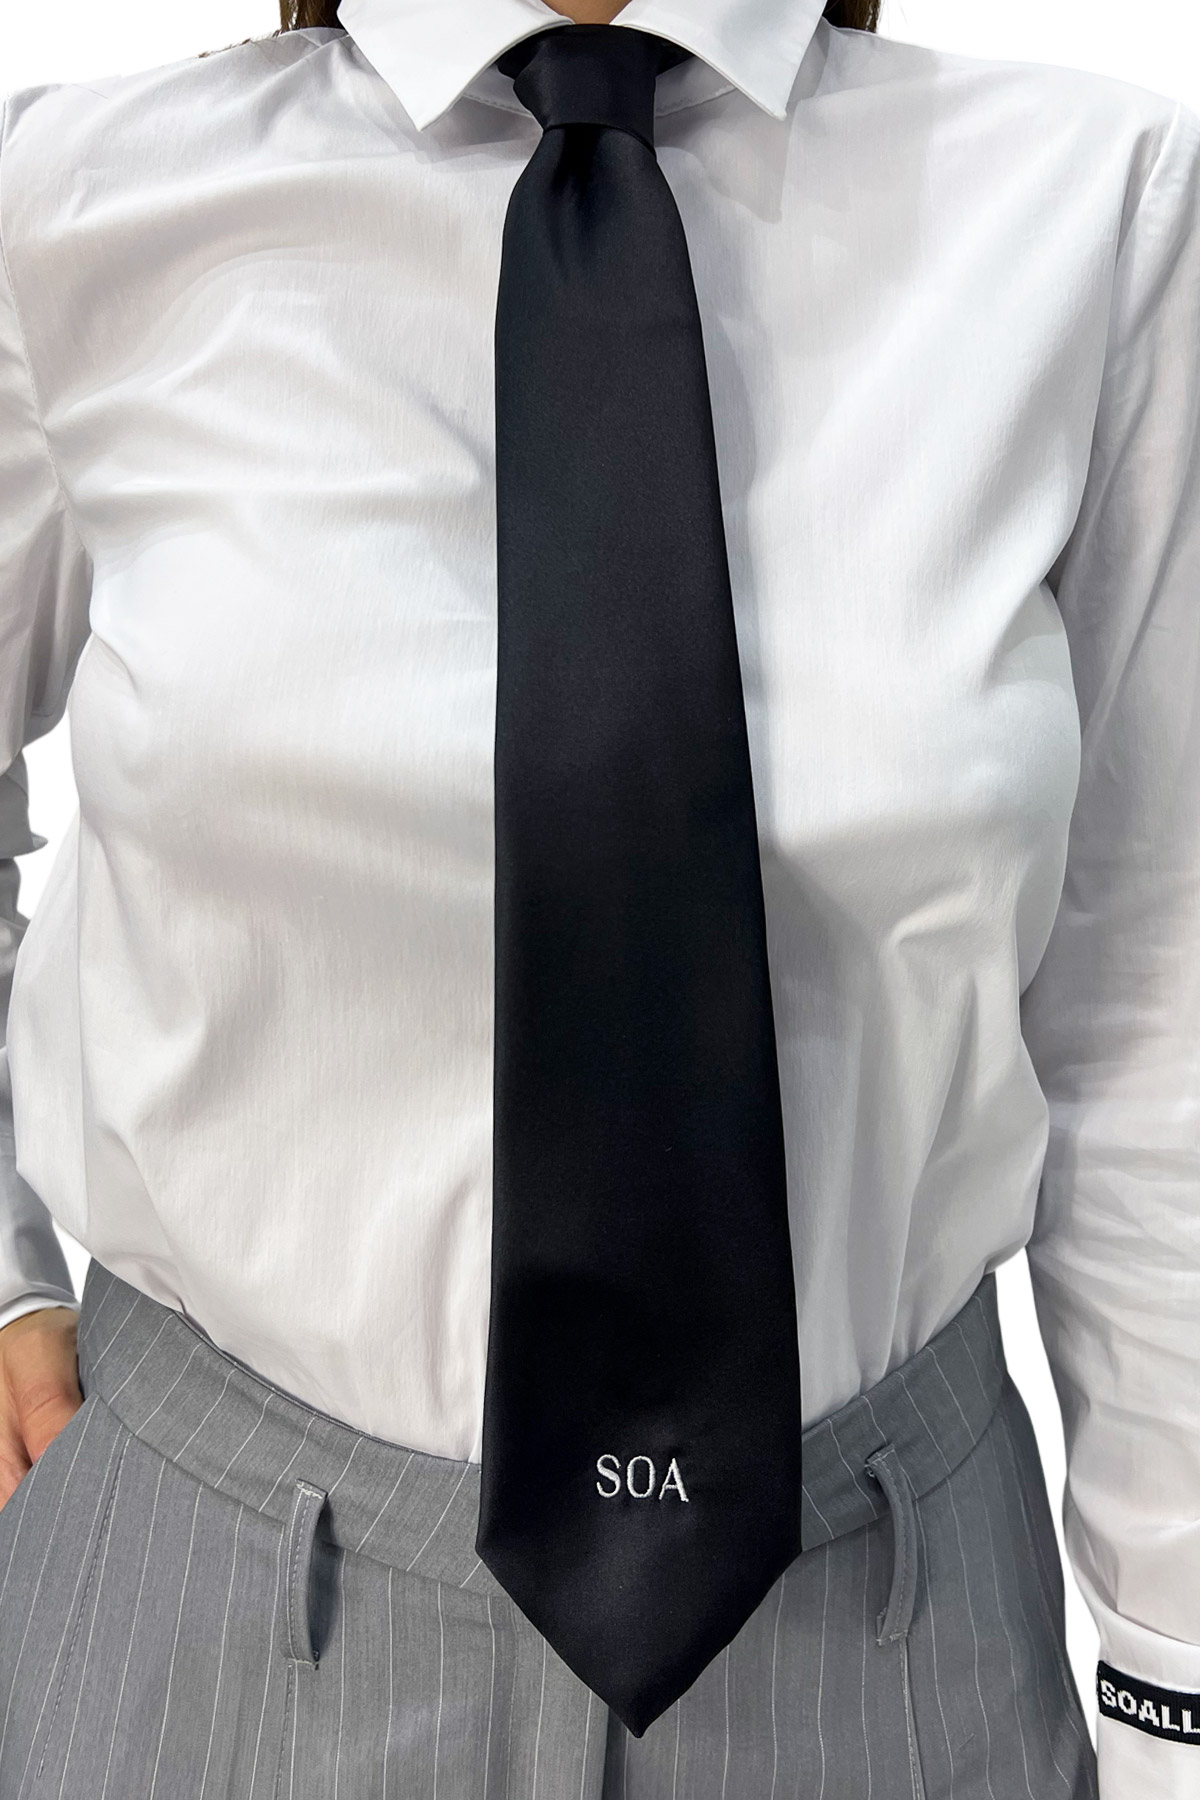 Cravatta donna in raso lucido larghezza 6 cm con logo ricamato sul fondo a contrasto